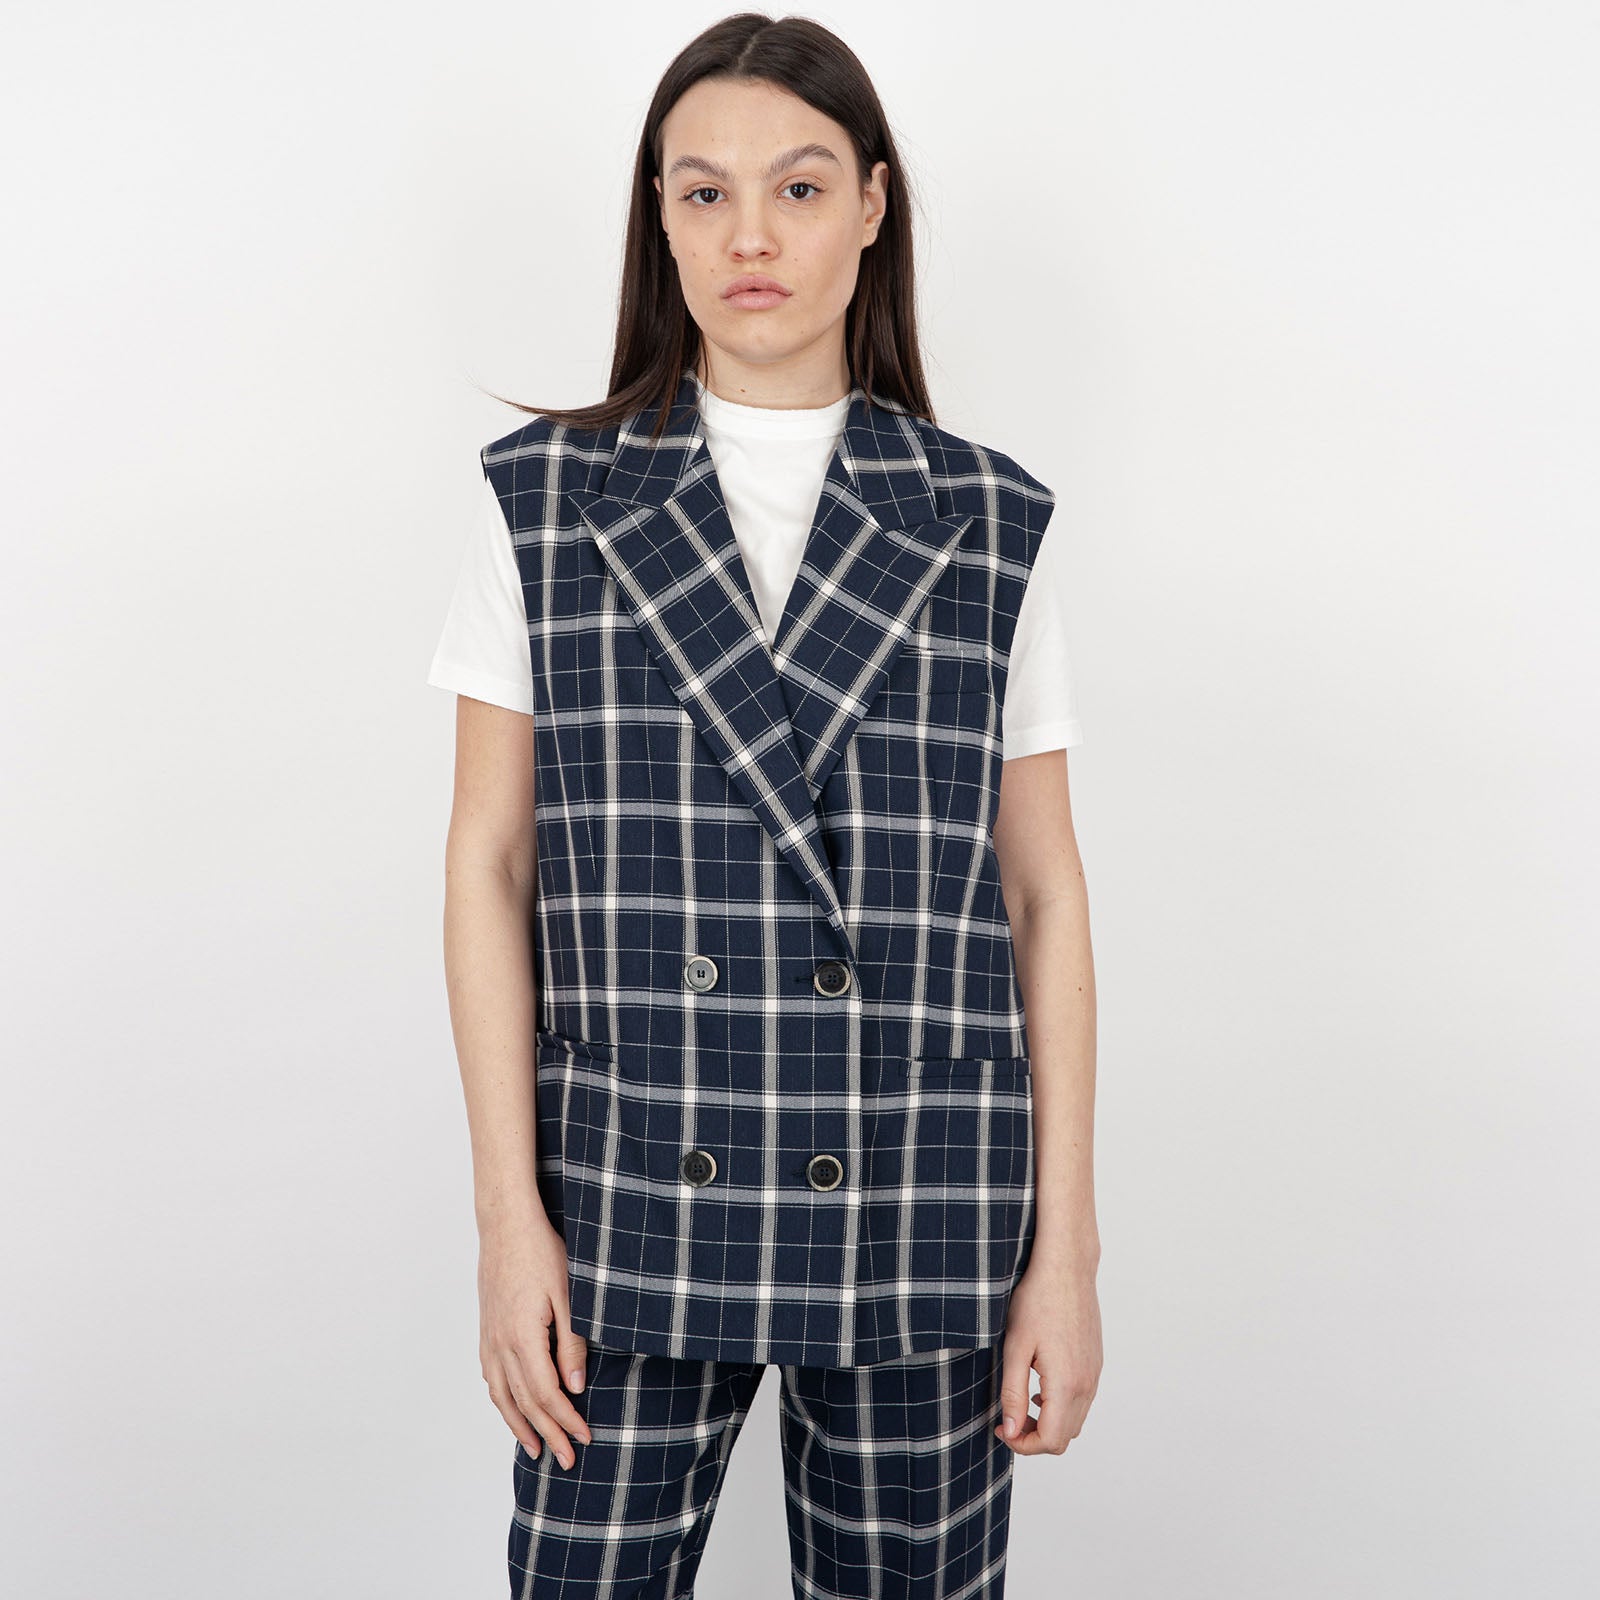 SemiCouture Alisha Synthetic Vest in Cream - 6